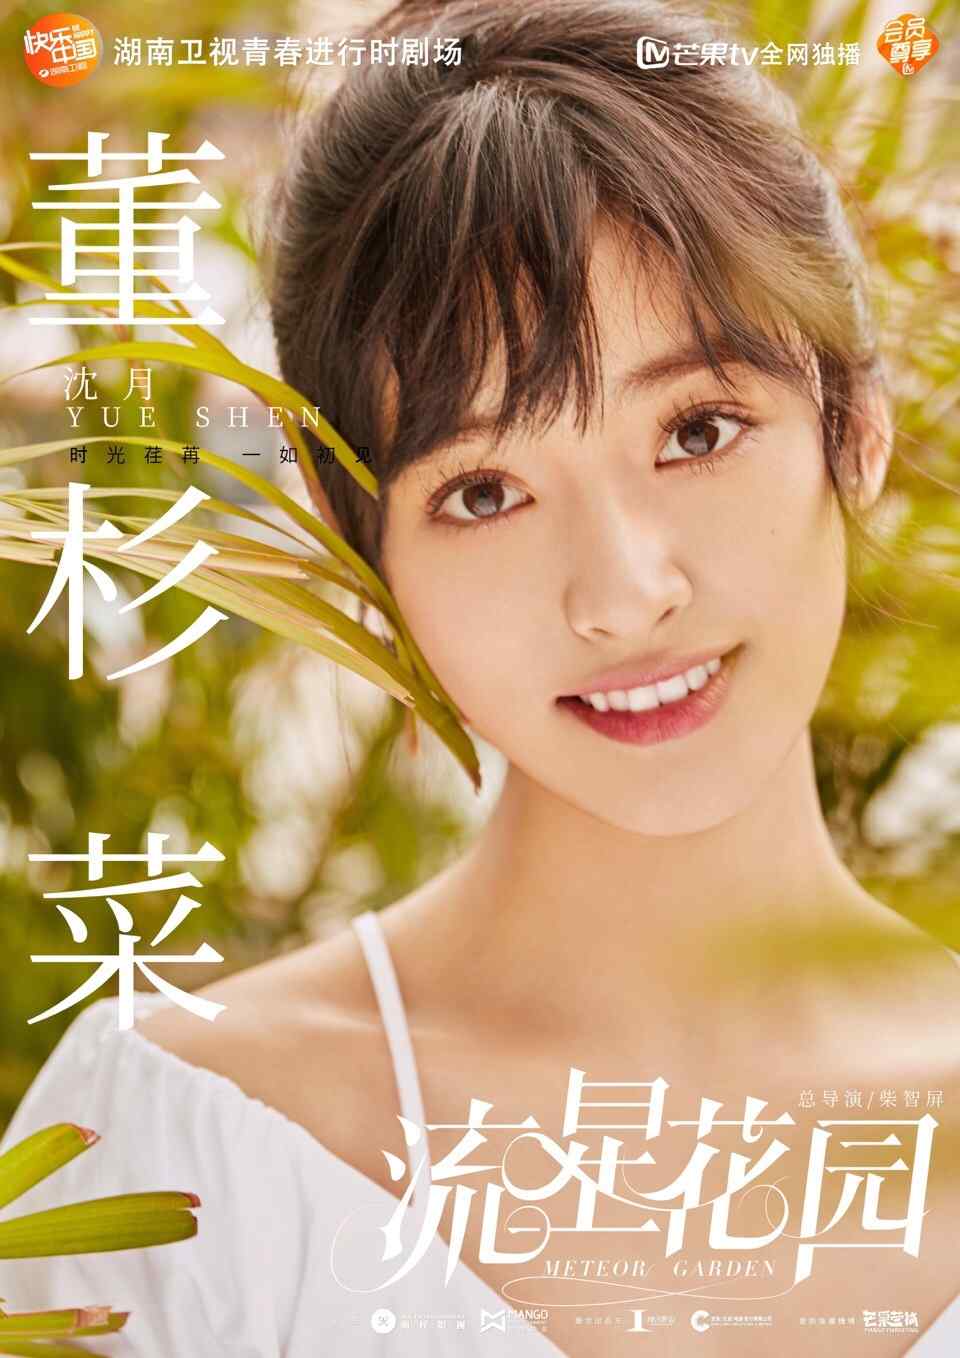 新版《流星花园》沈月饰董杉菜个人海报